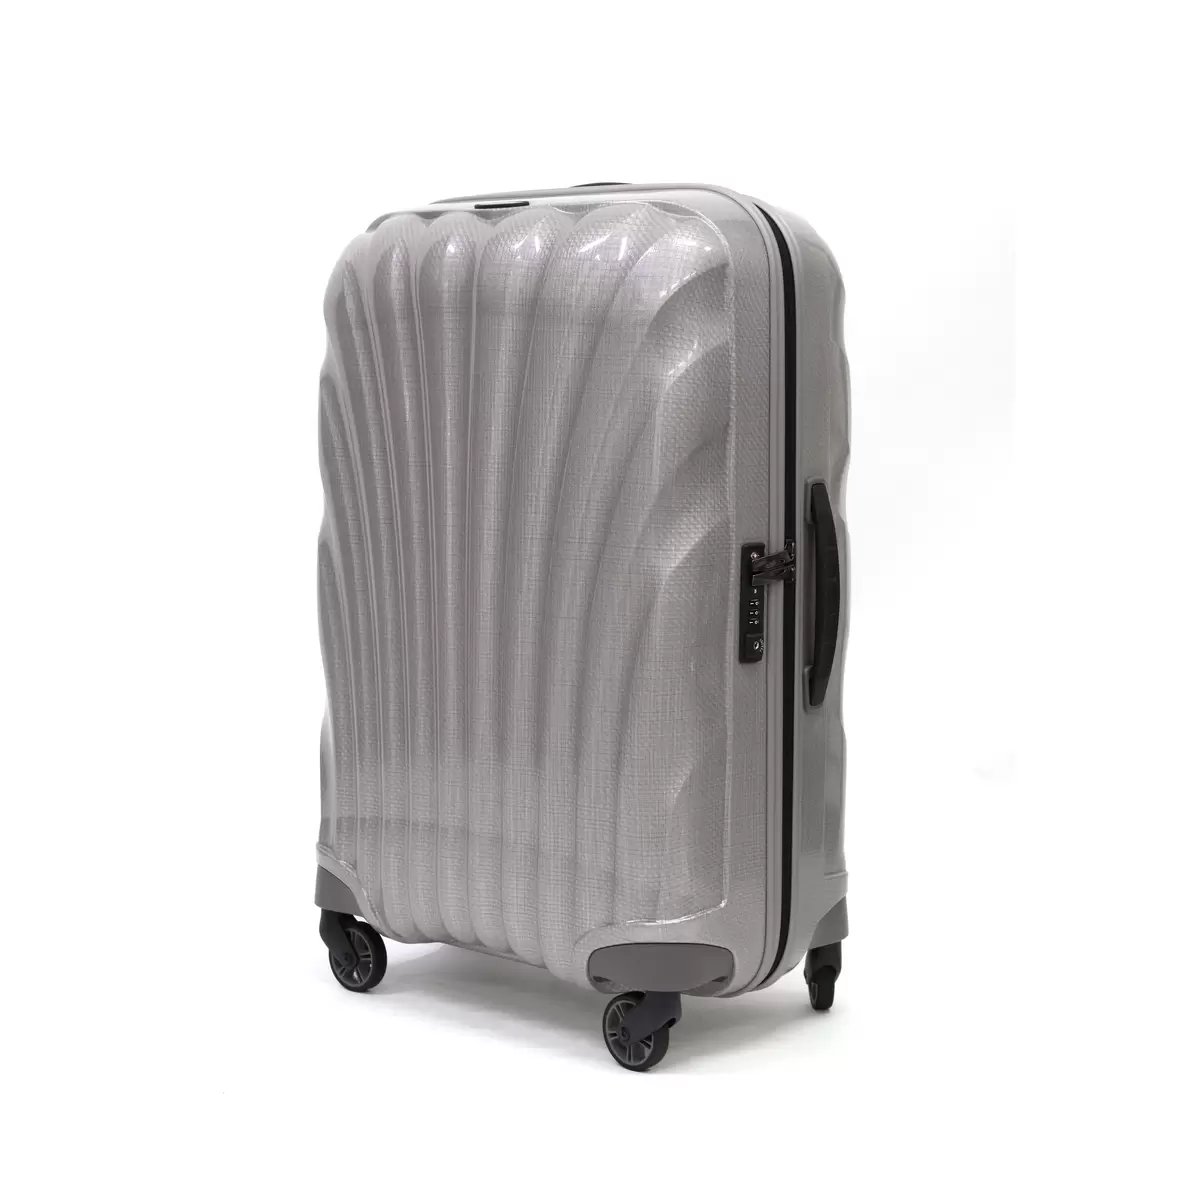 サムソナイト スーツケース コスモライト 3.0 69cm 73350 パール